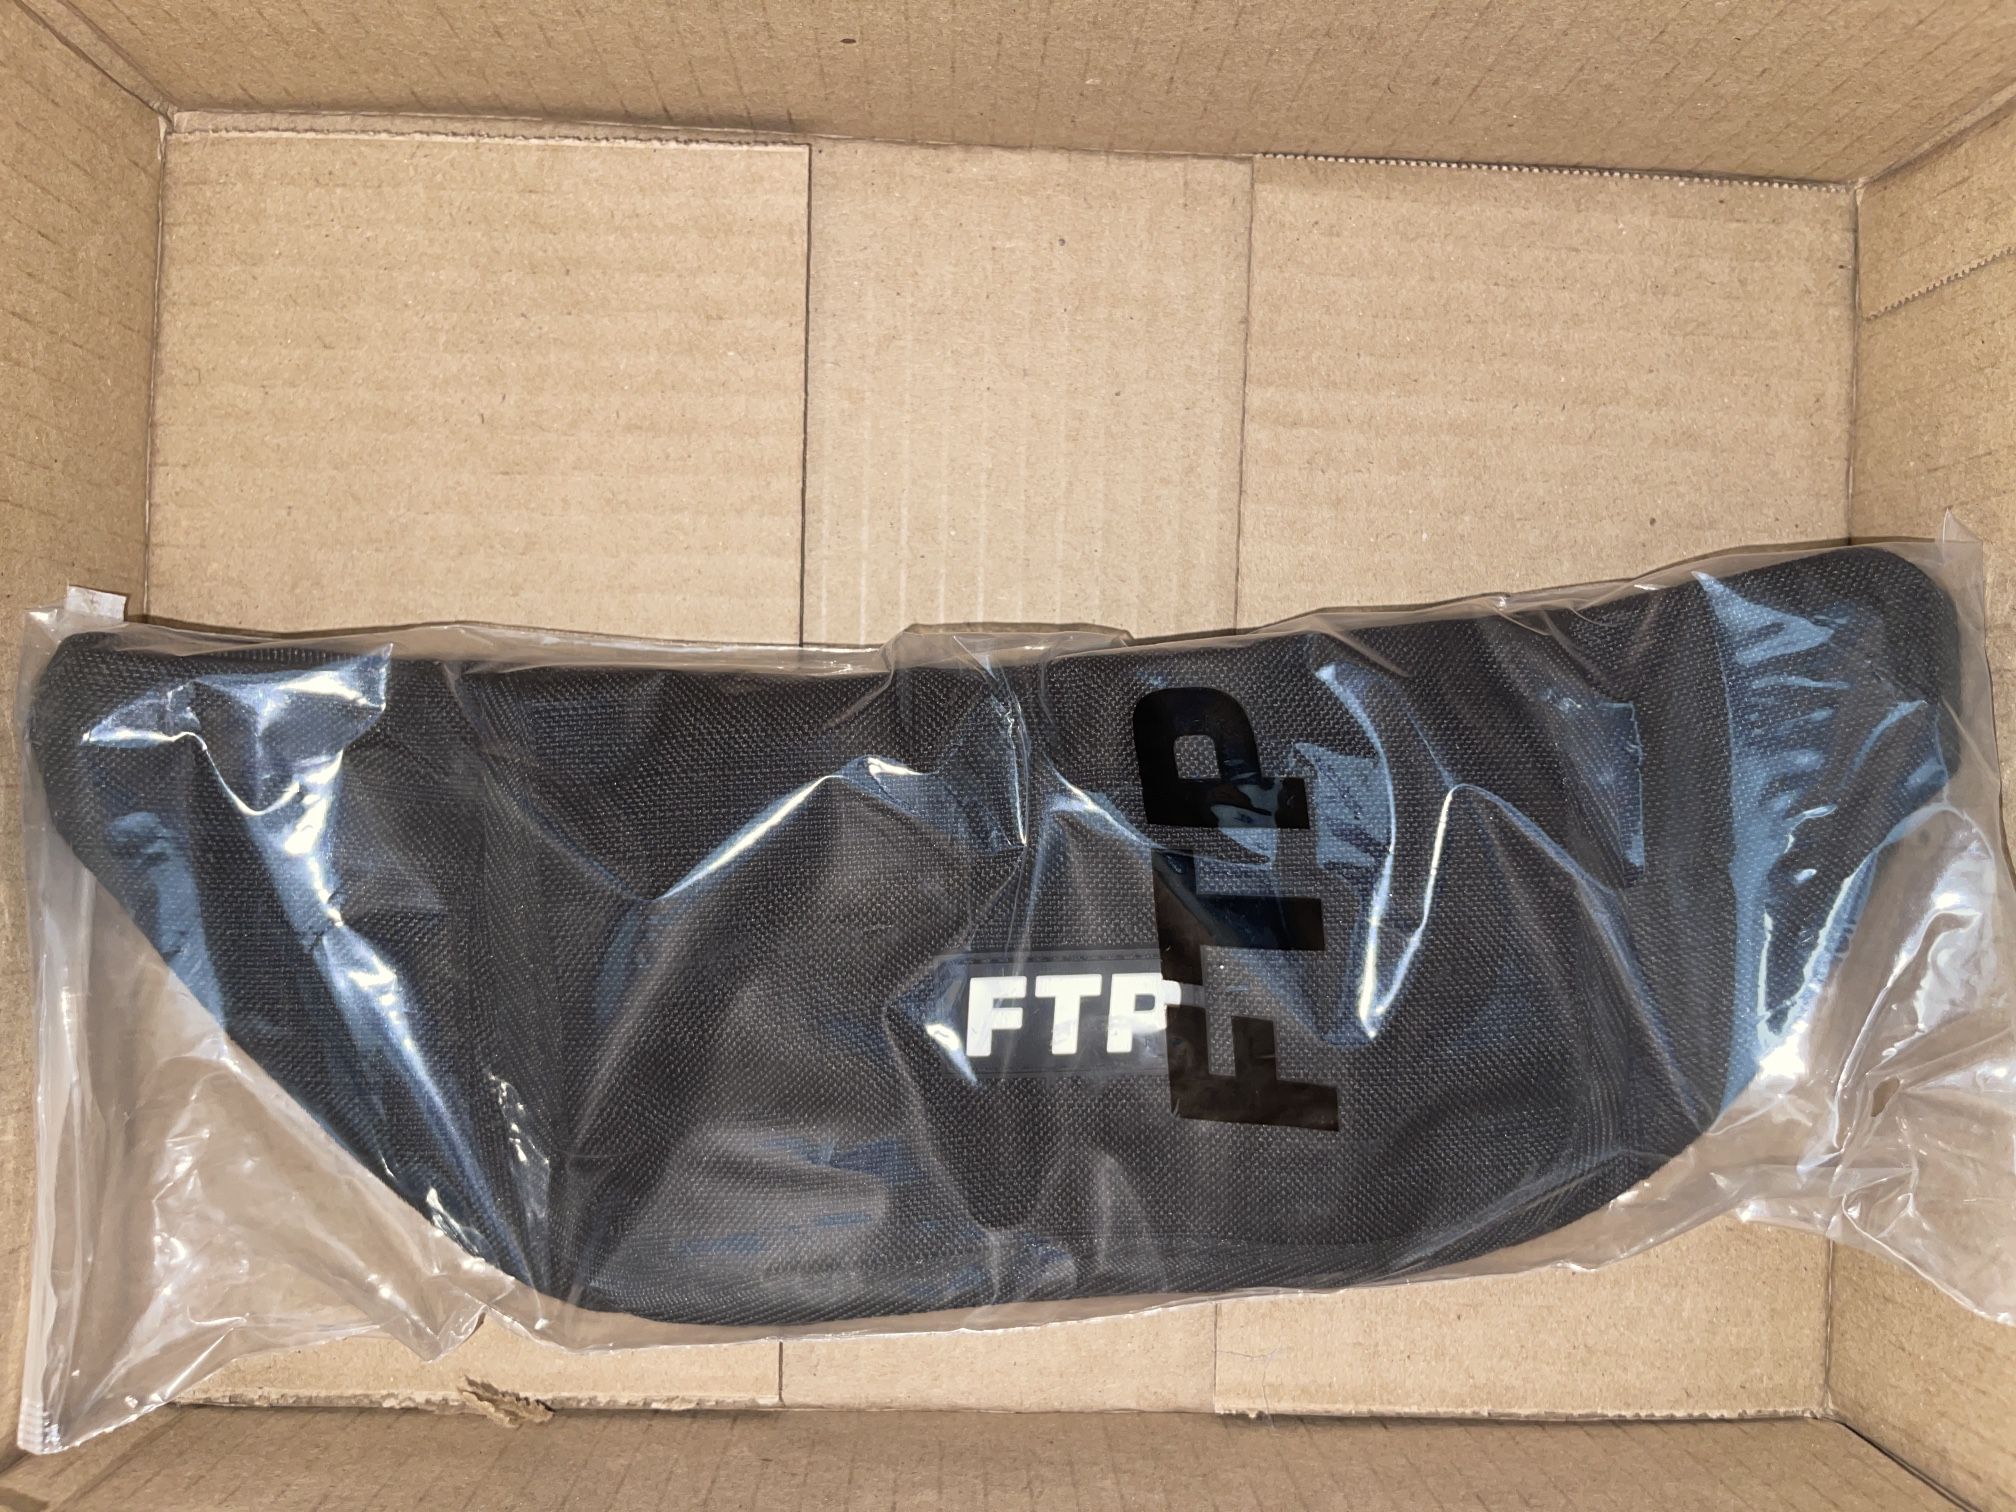 FTP ripstop waist bag